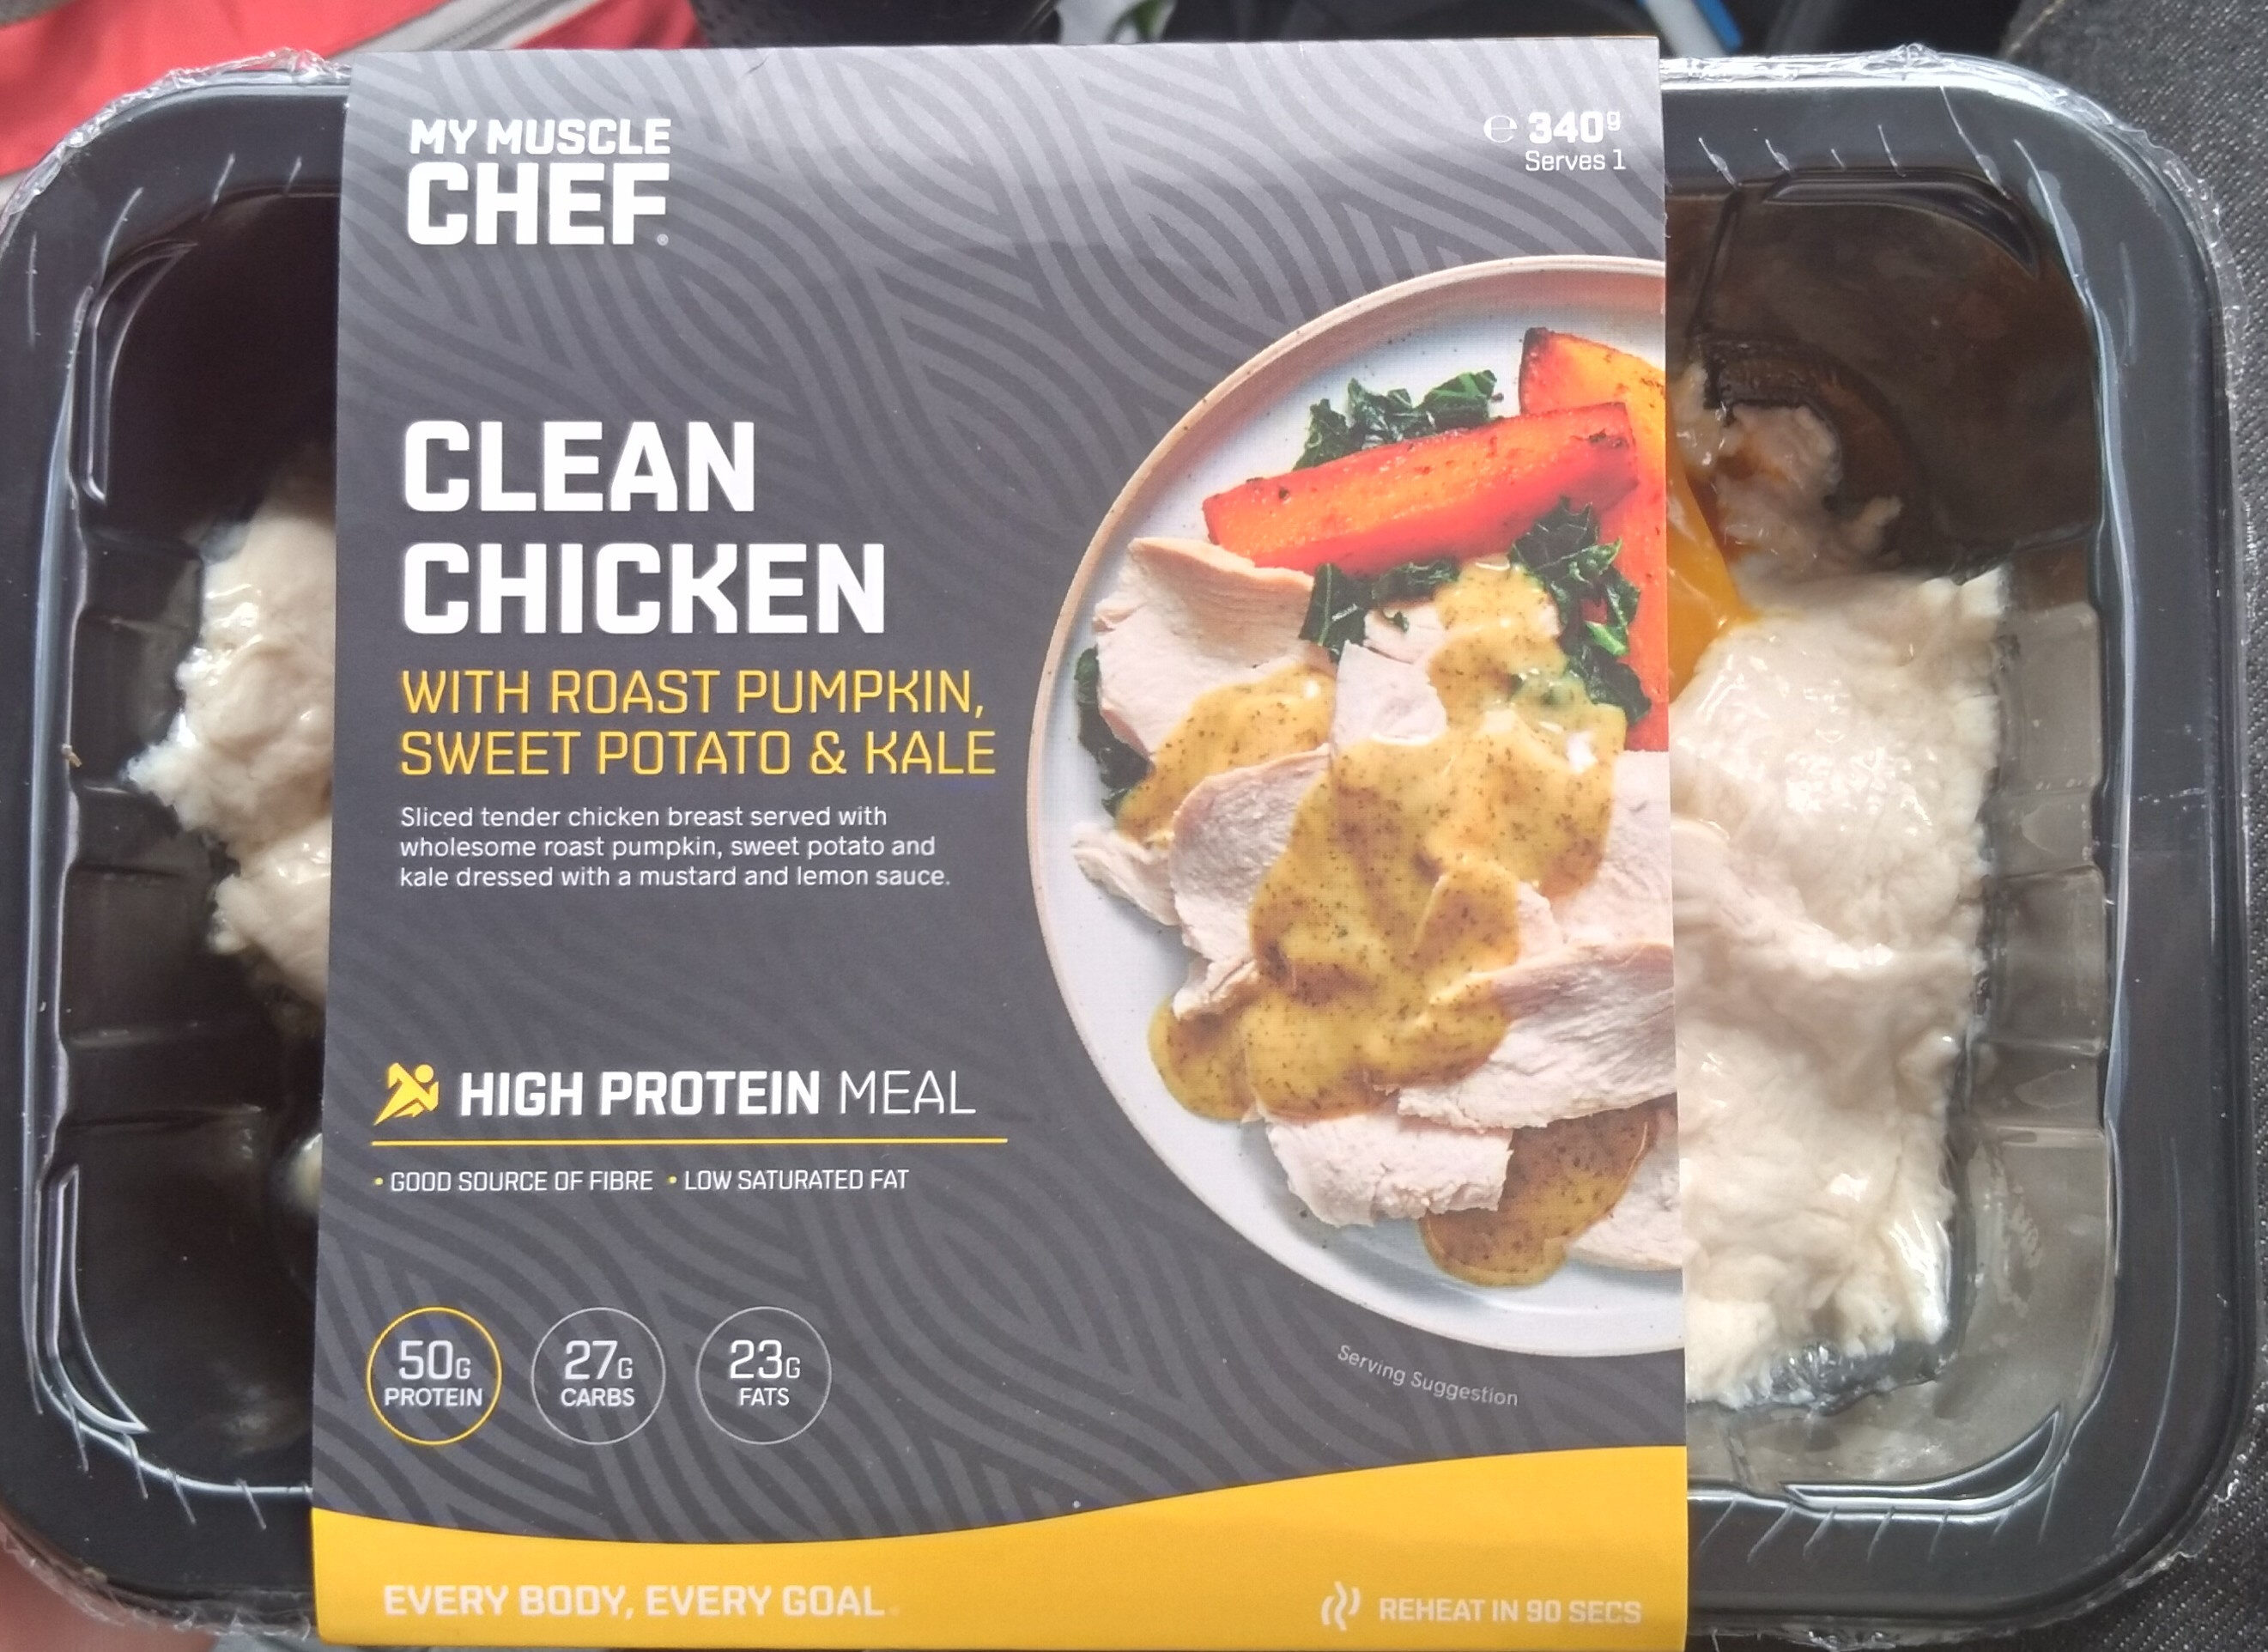 Clean Chicken with Roast Pumpkin, Sweet Potato & Kale - Product - en